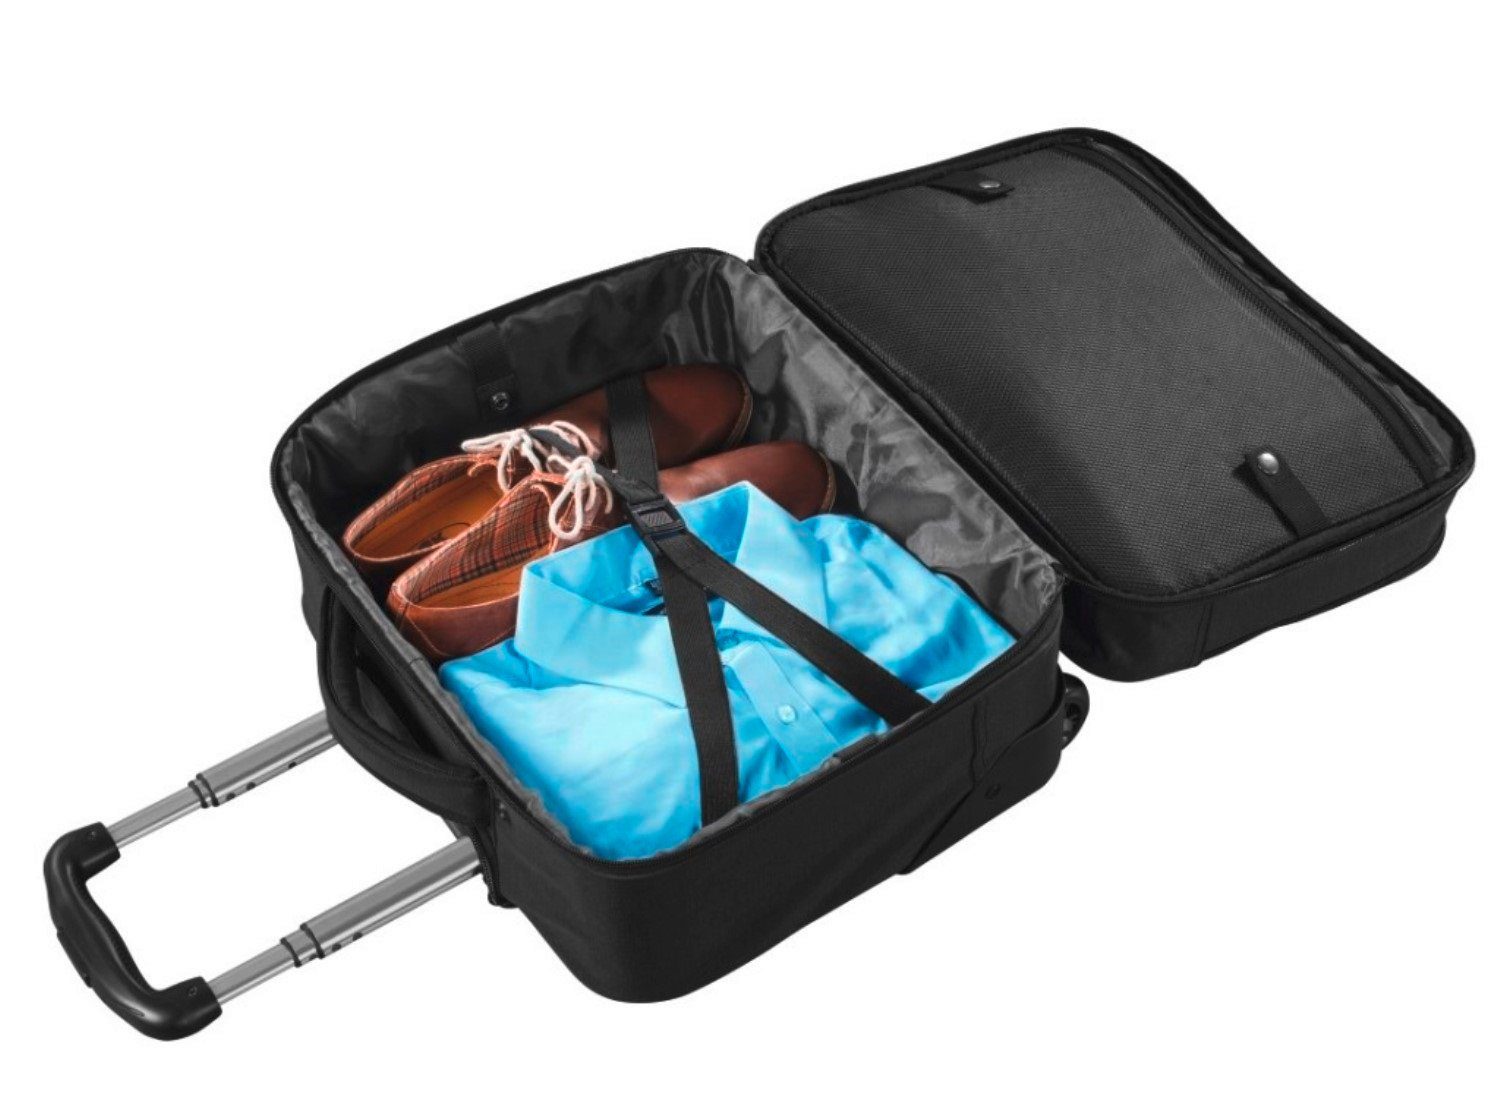 Hama Laptoptasche »Business-Trolley Koffer Notebook-Tasche Laptop«, Extra  Fächern, Handgepäck Flugzeug, für Tablets bis 32,77 cm (12,9) im Hauptfach  online kaufen | OTTO